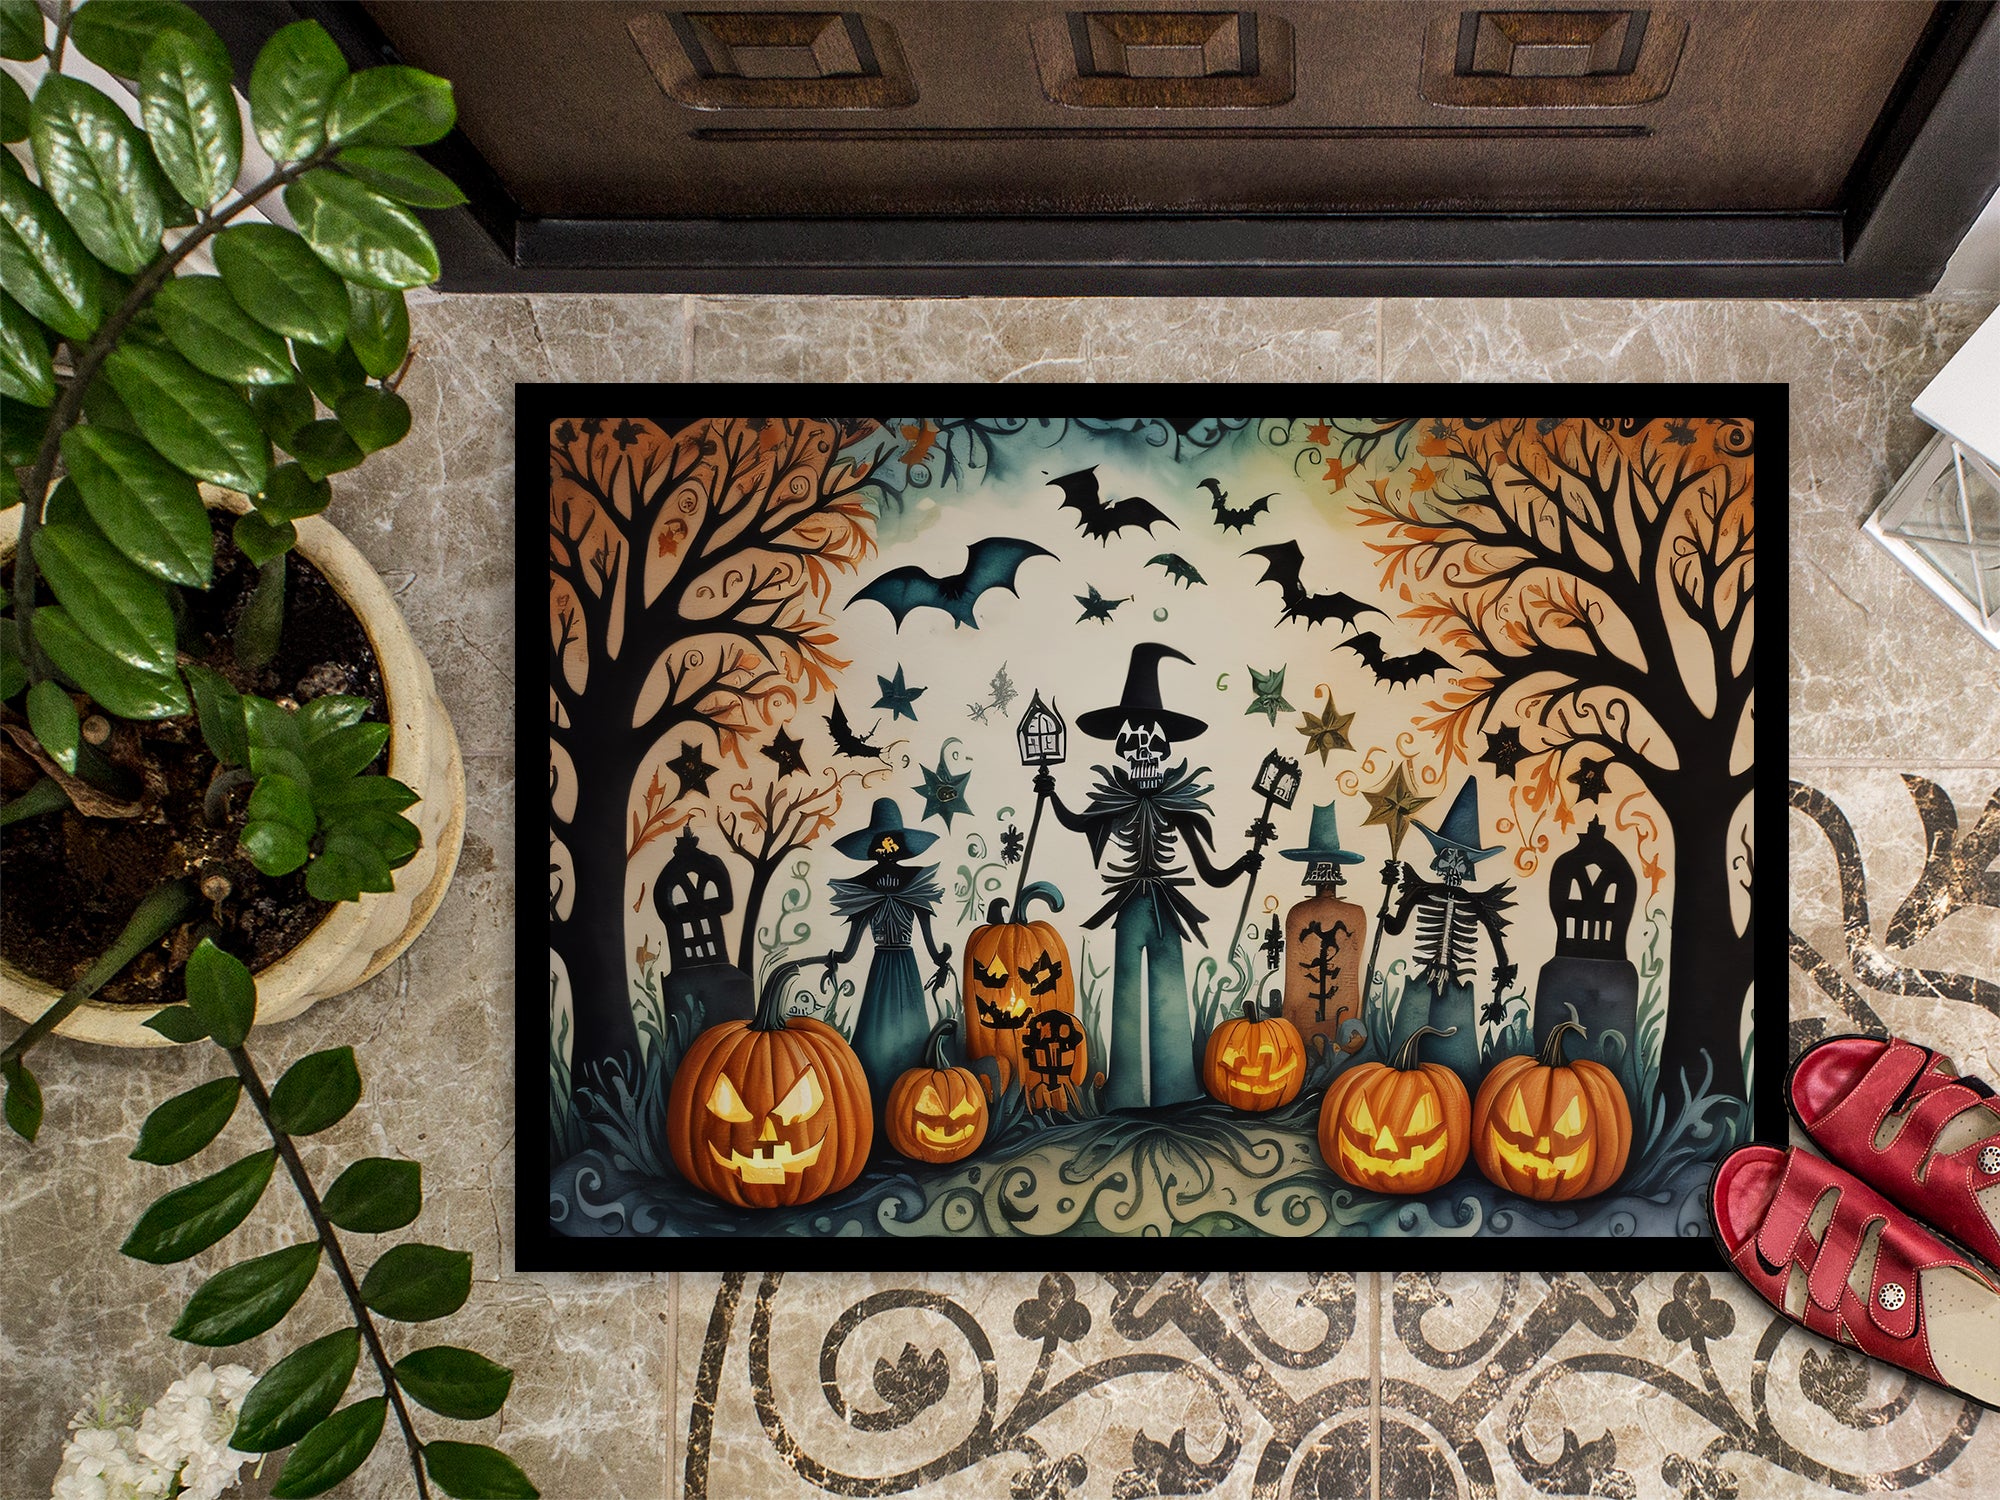 Papel Picado Skeletons Spooky Halloween Indoor or Outdoor Mat 24x36